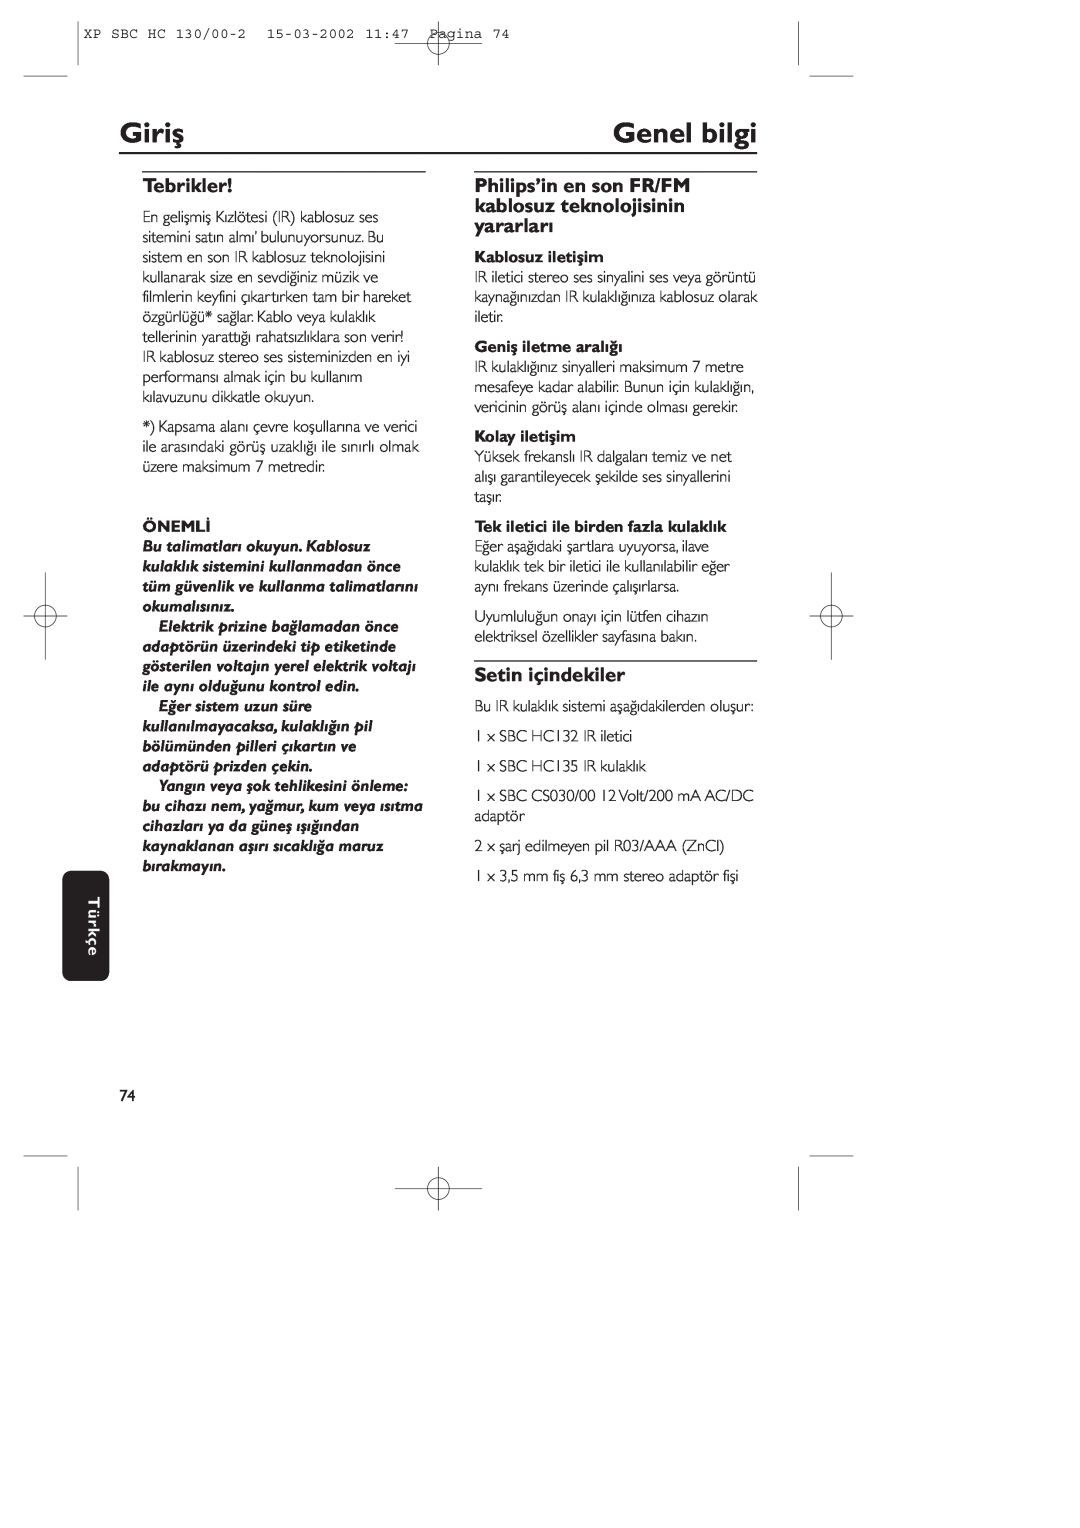 Philips SBC HC130 Giriş, Genel bilgi, Tebrikler, Setin içindekiler, Önemli, Türkçe, Kablosuz iletişim, Kolay iletişim 